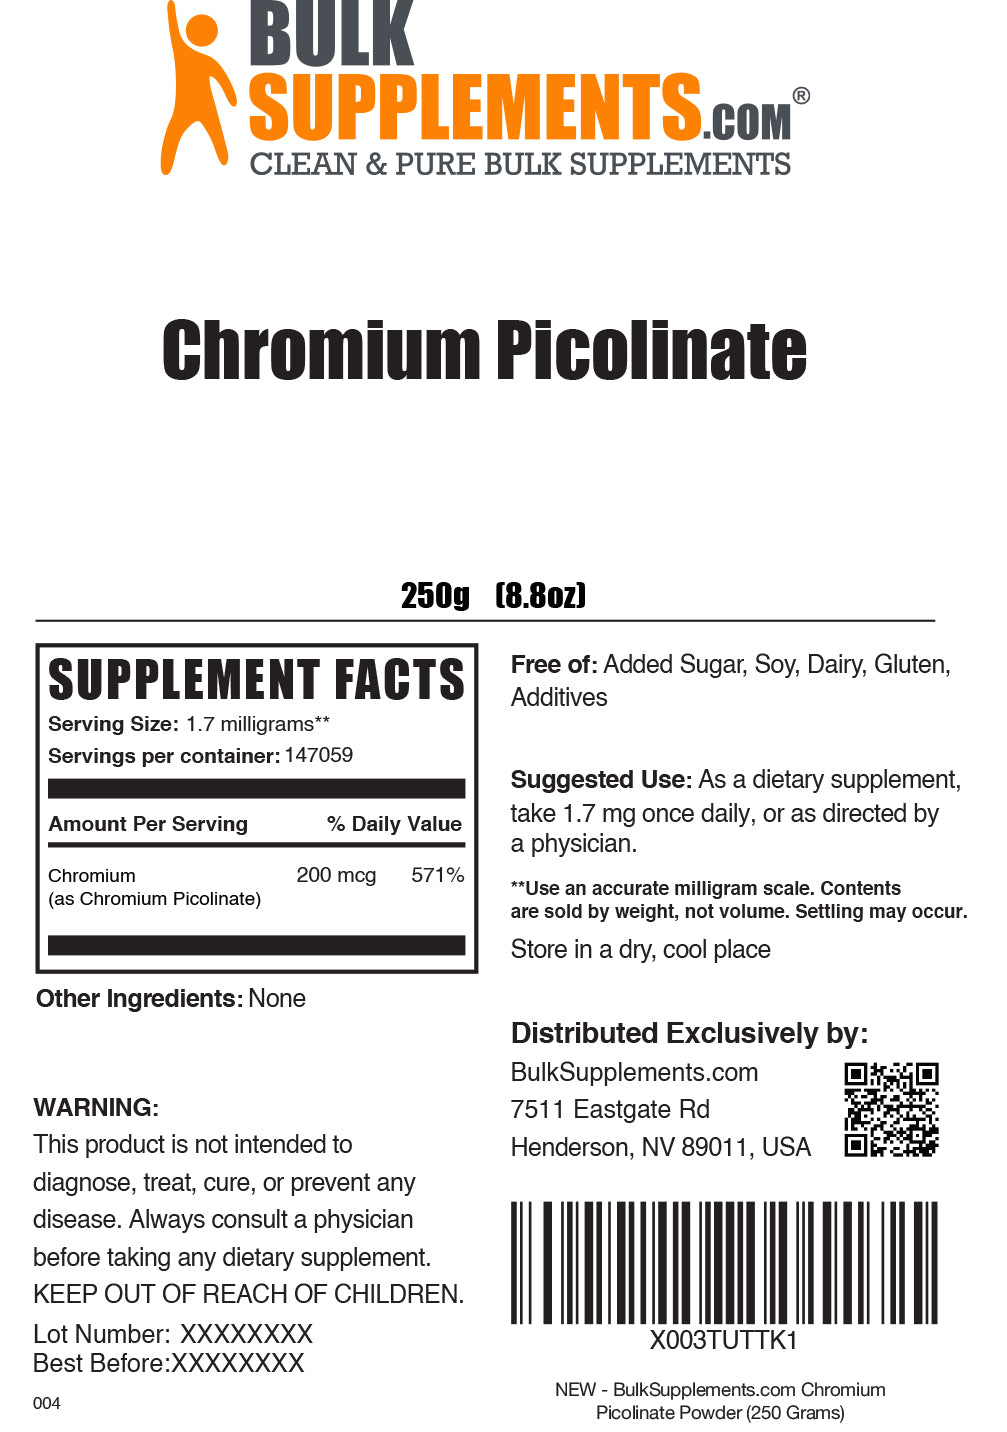 Chromium picolinate powder label 250g